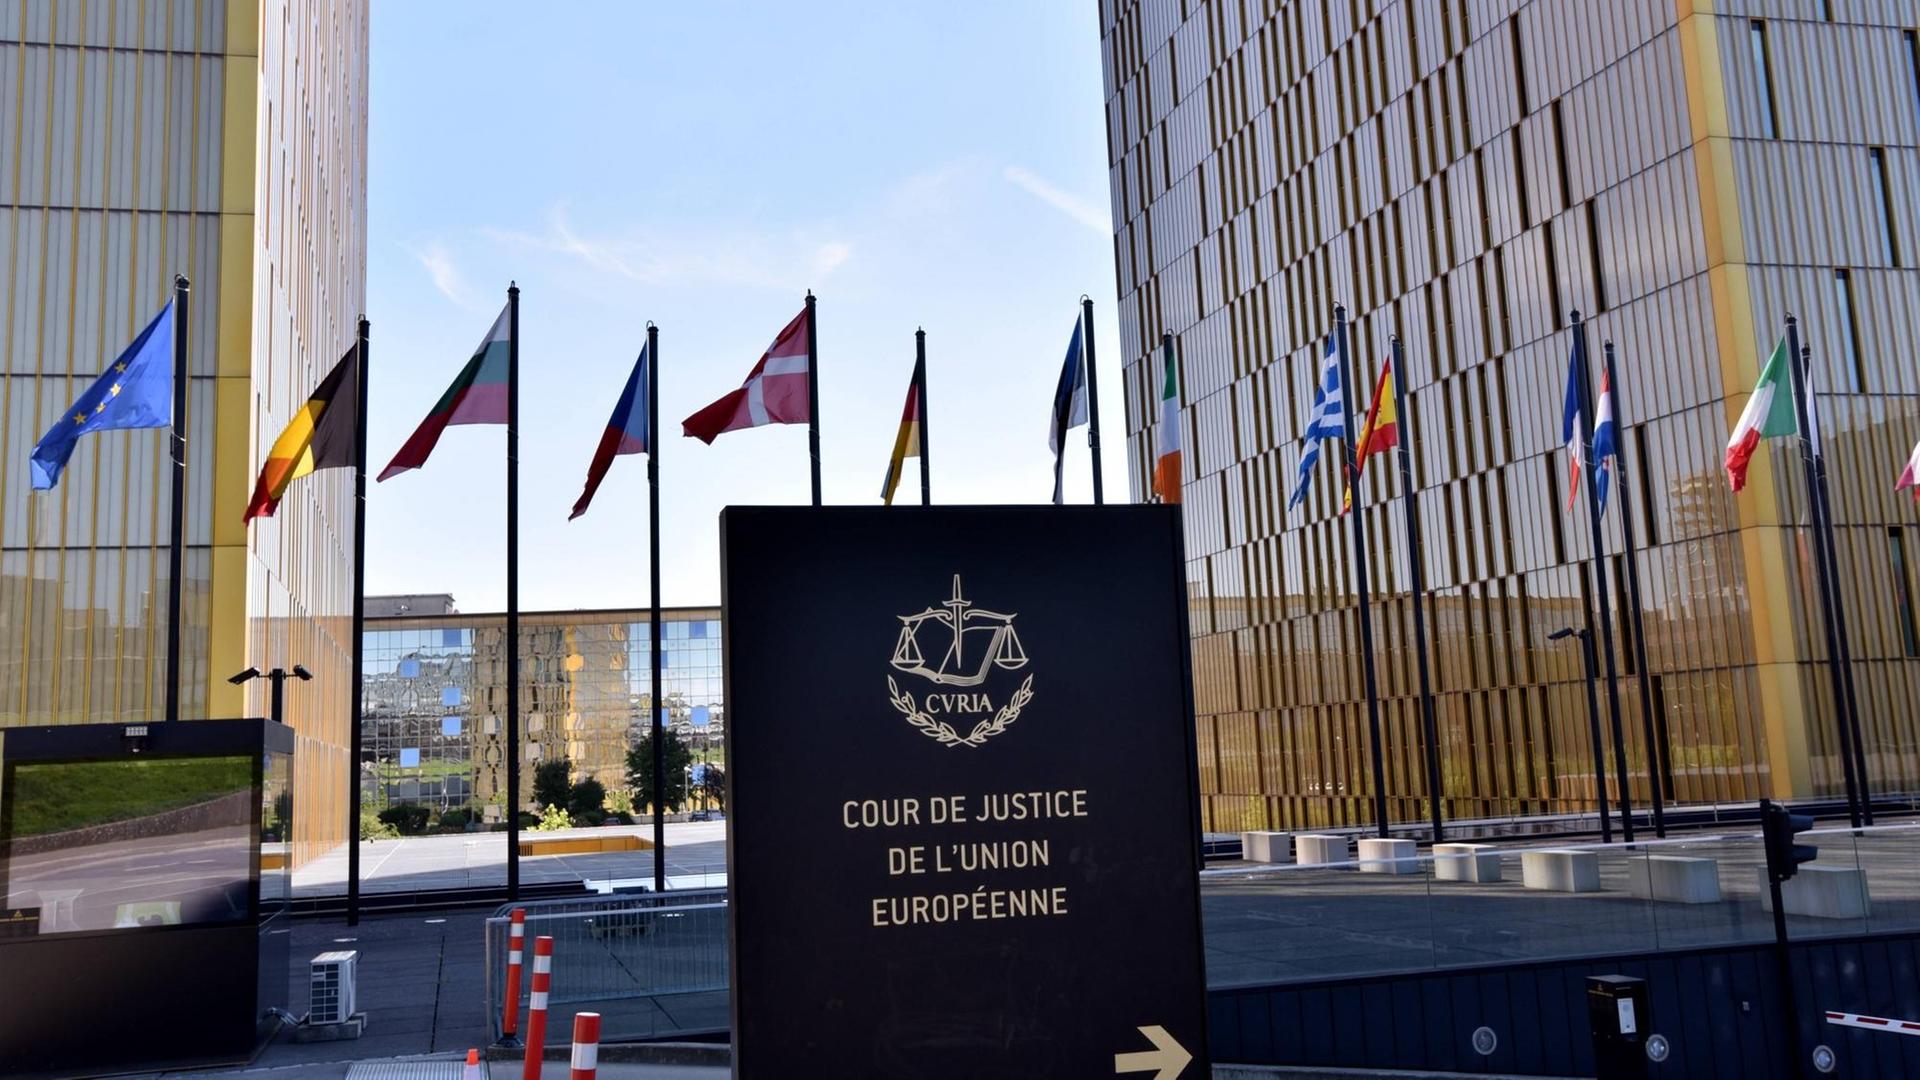 CVRIA der Europäische Gerichtshof